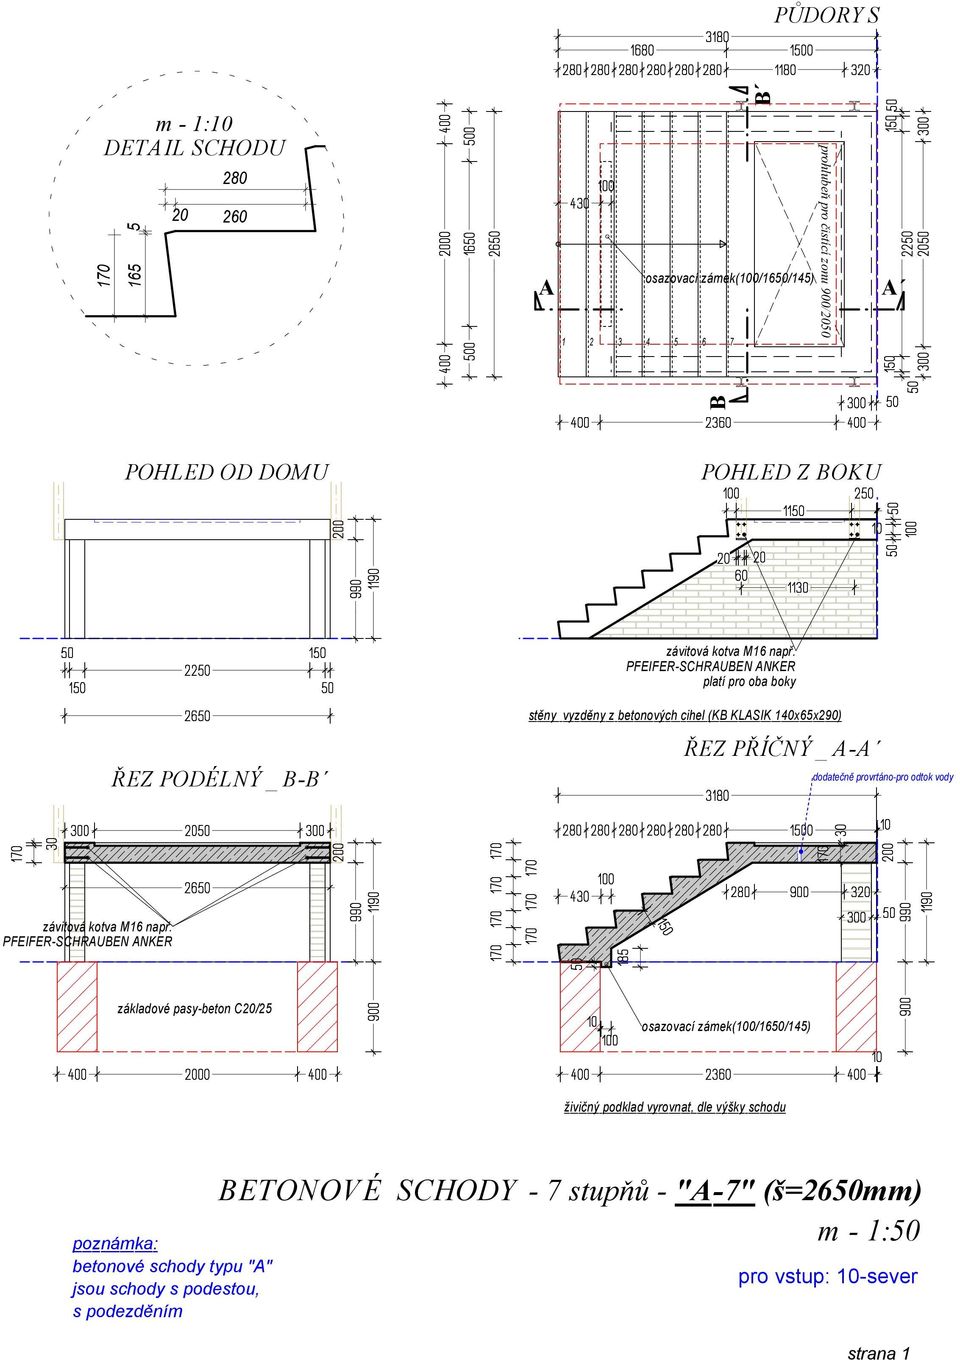 základové pasy-beton C/2 betonové schody typu "" ETONOVÉ SCHODY